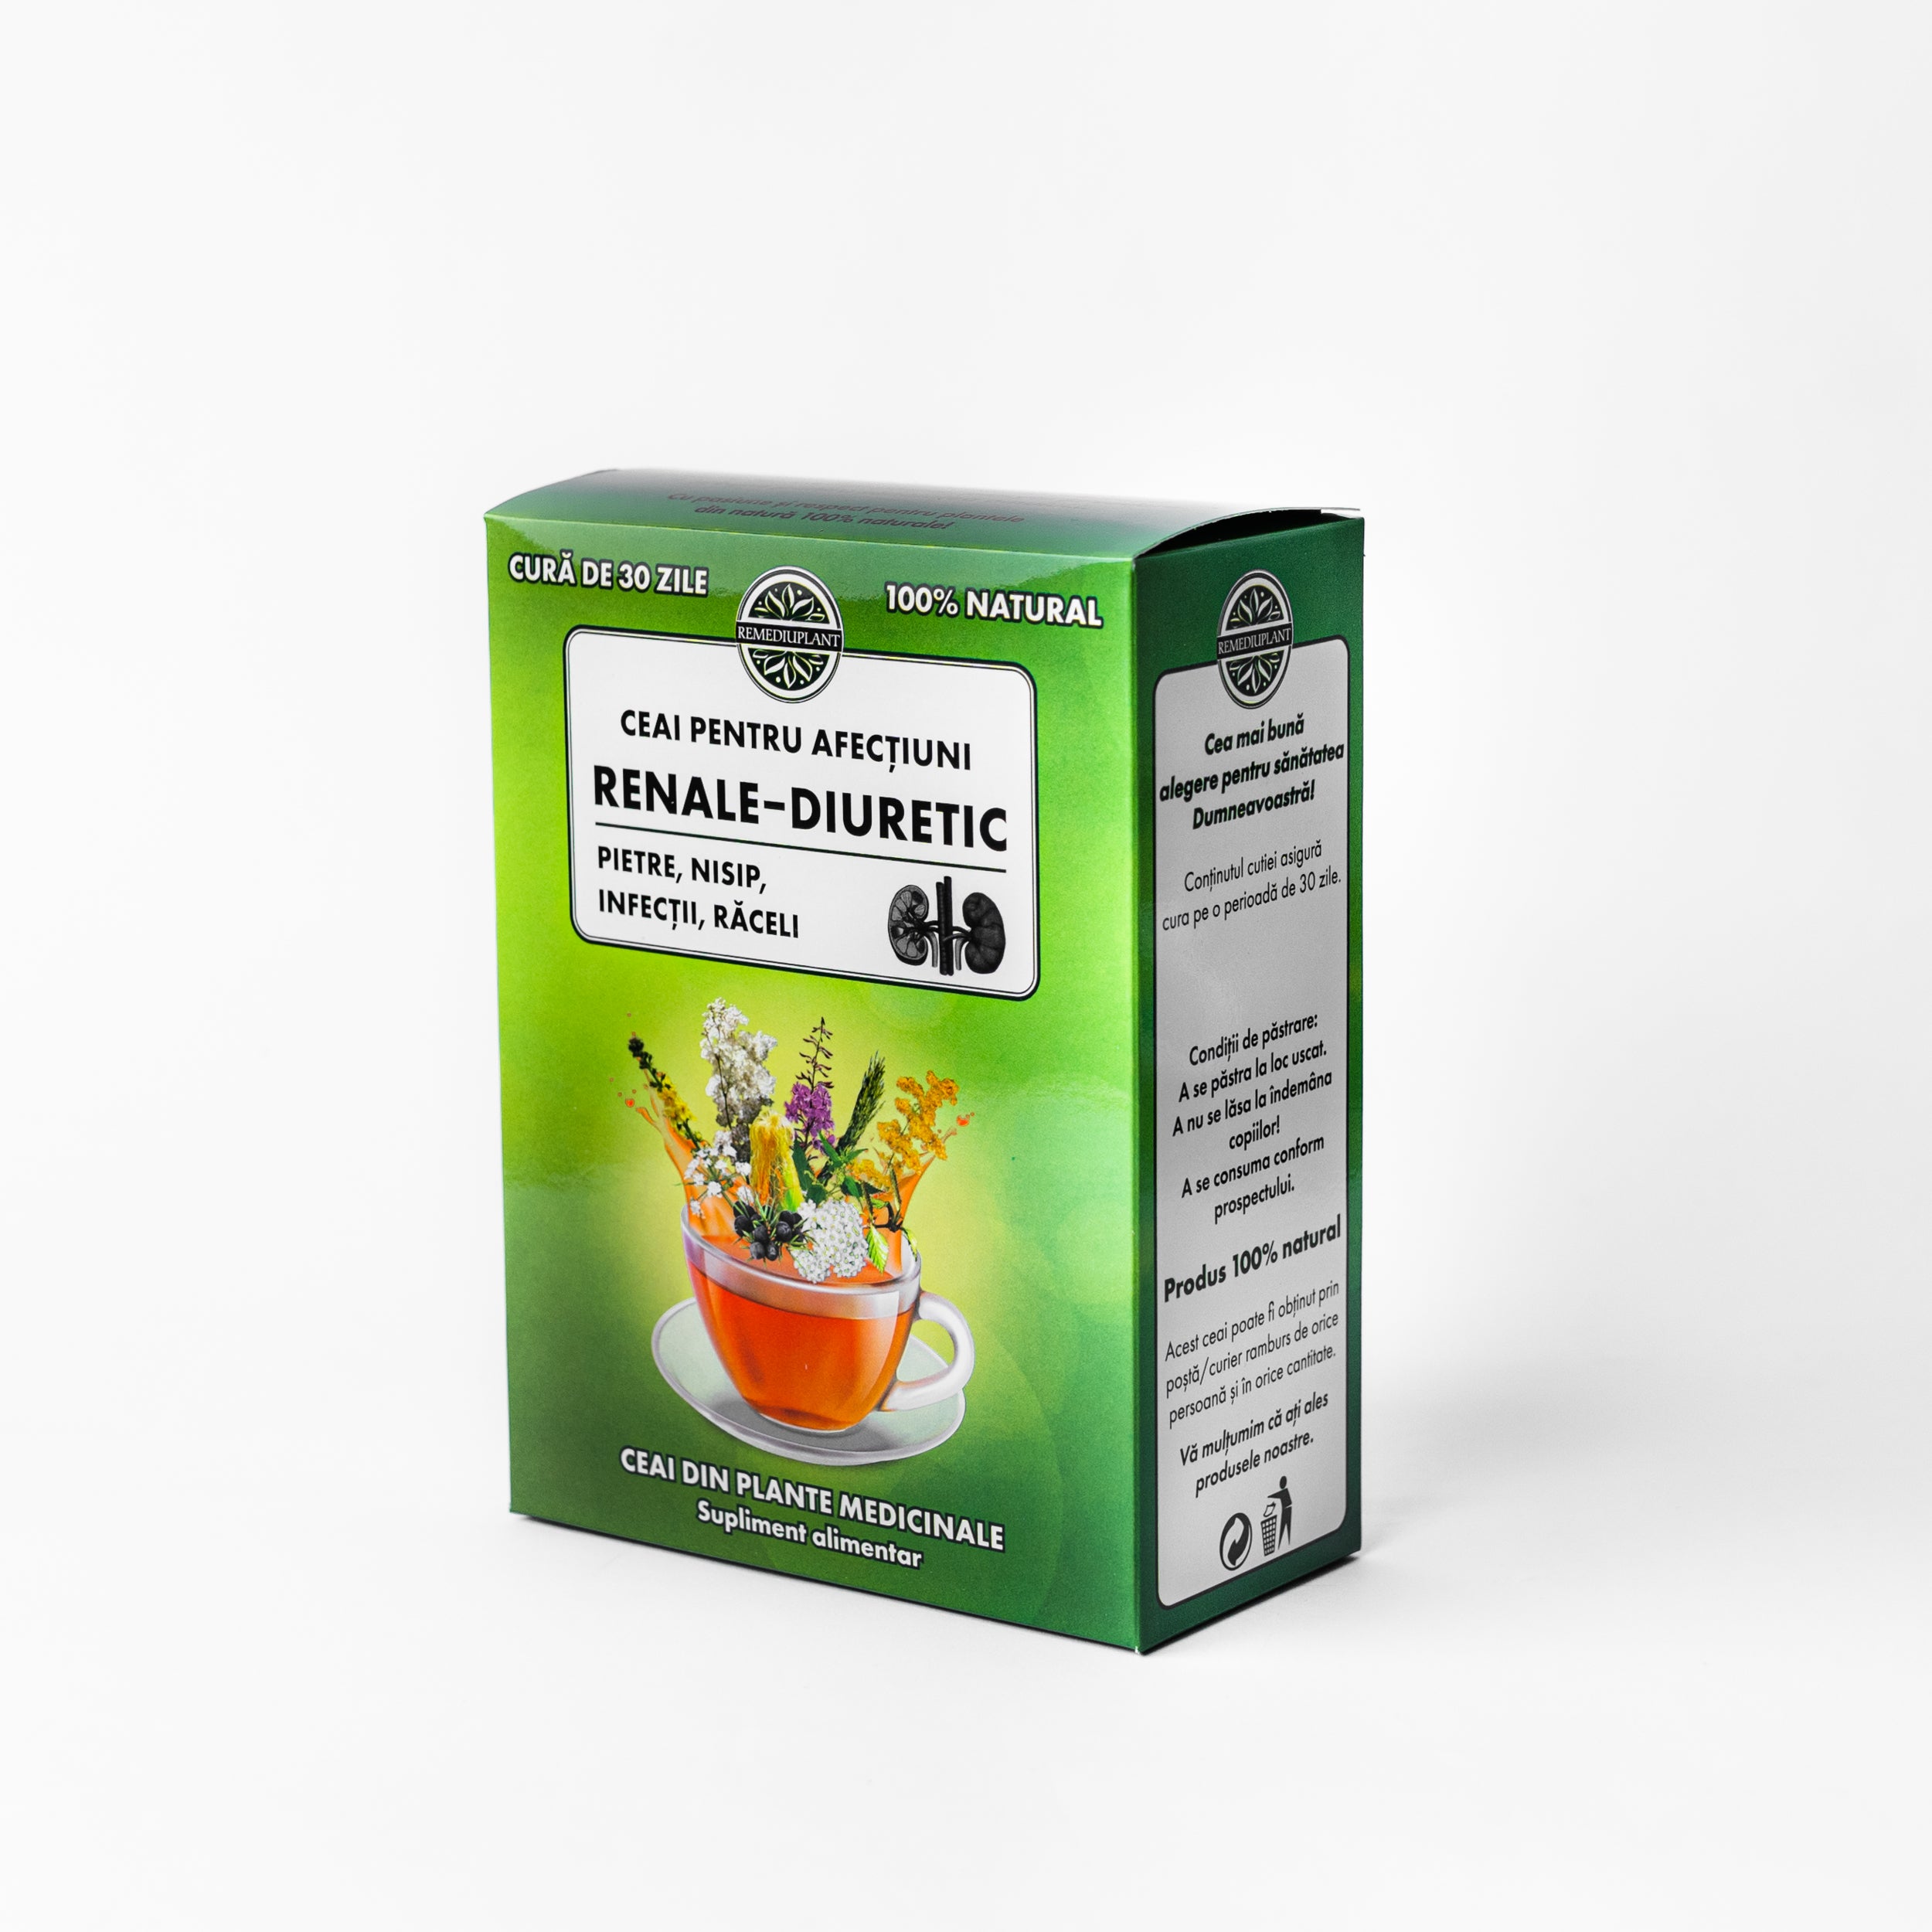 Ceai pentru afecțiuni renale – diuretic 250 gr